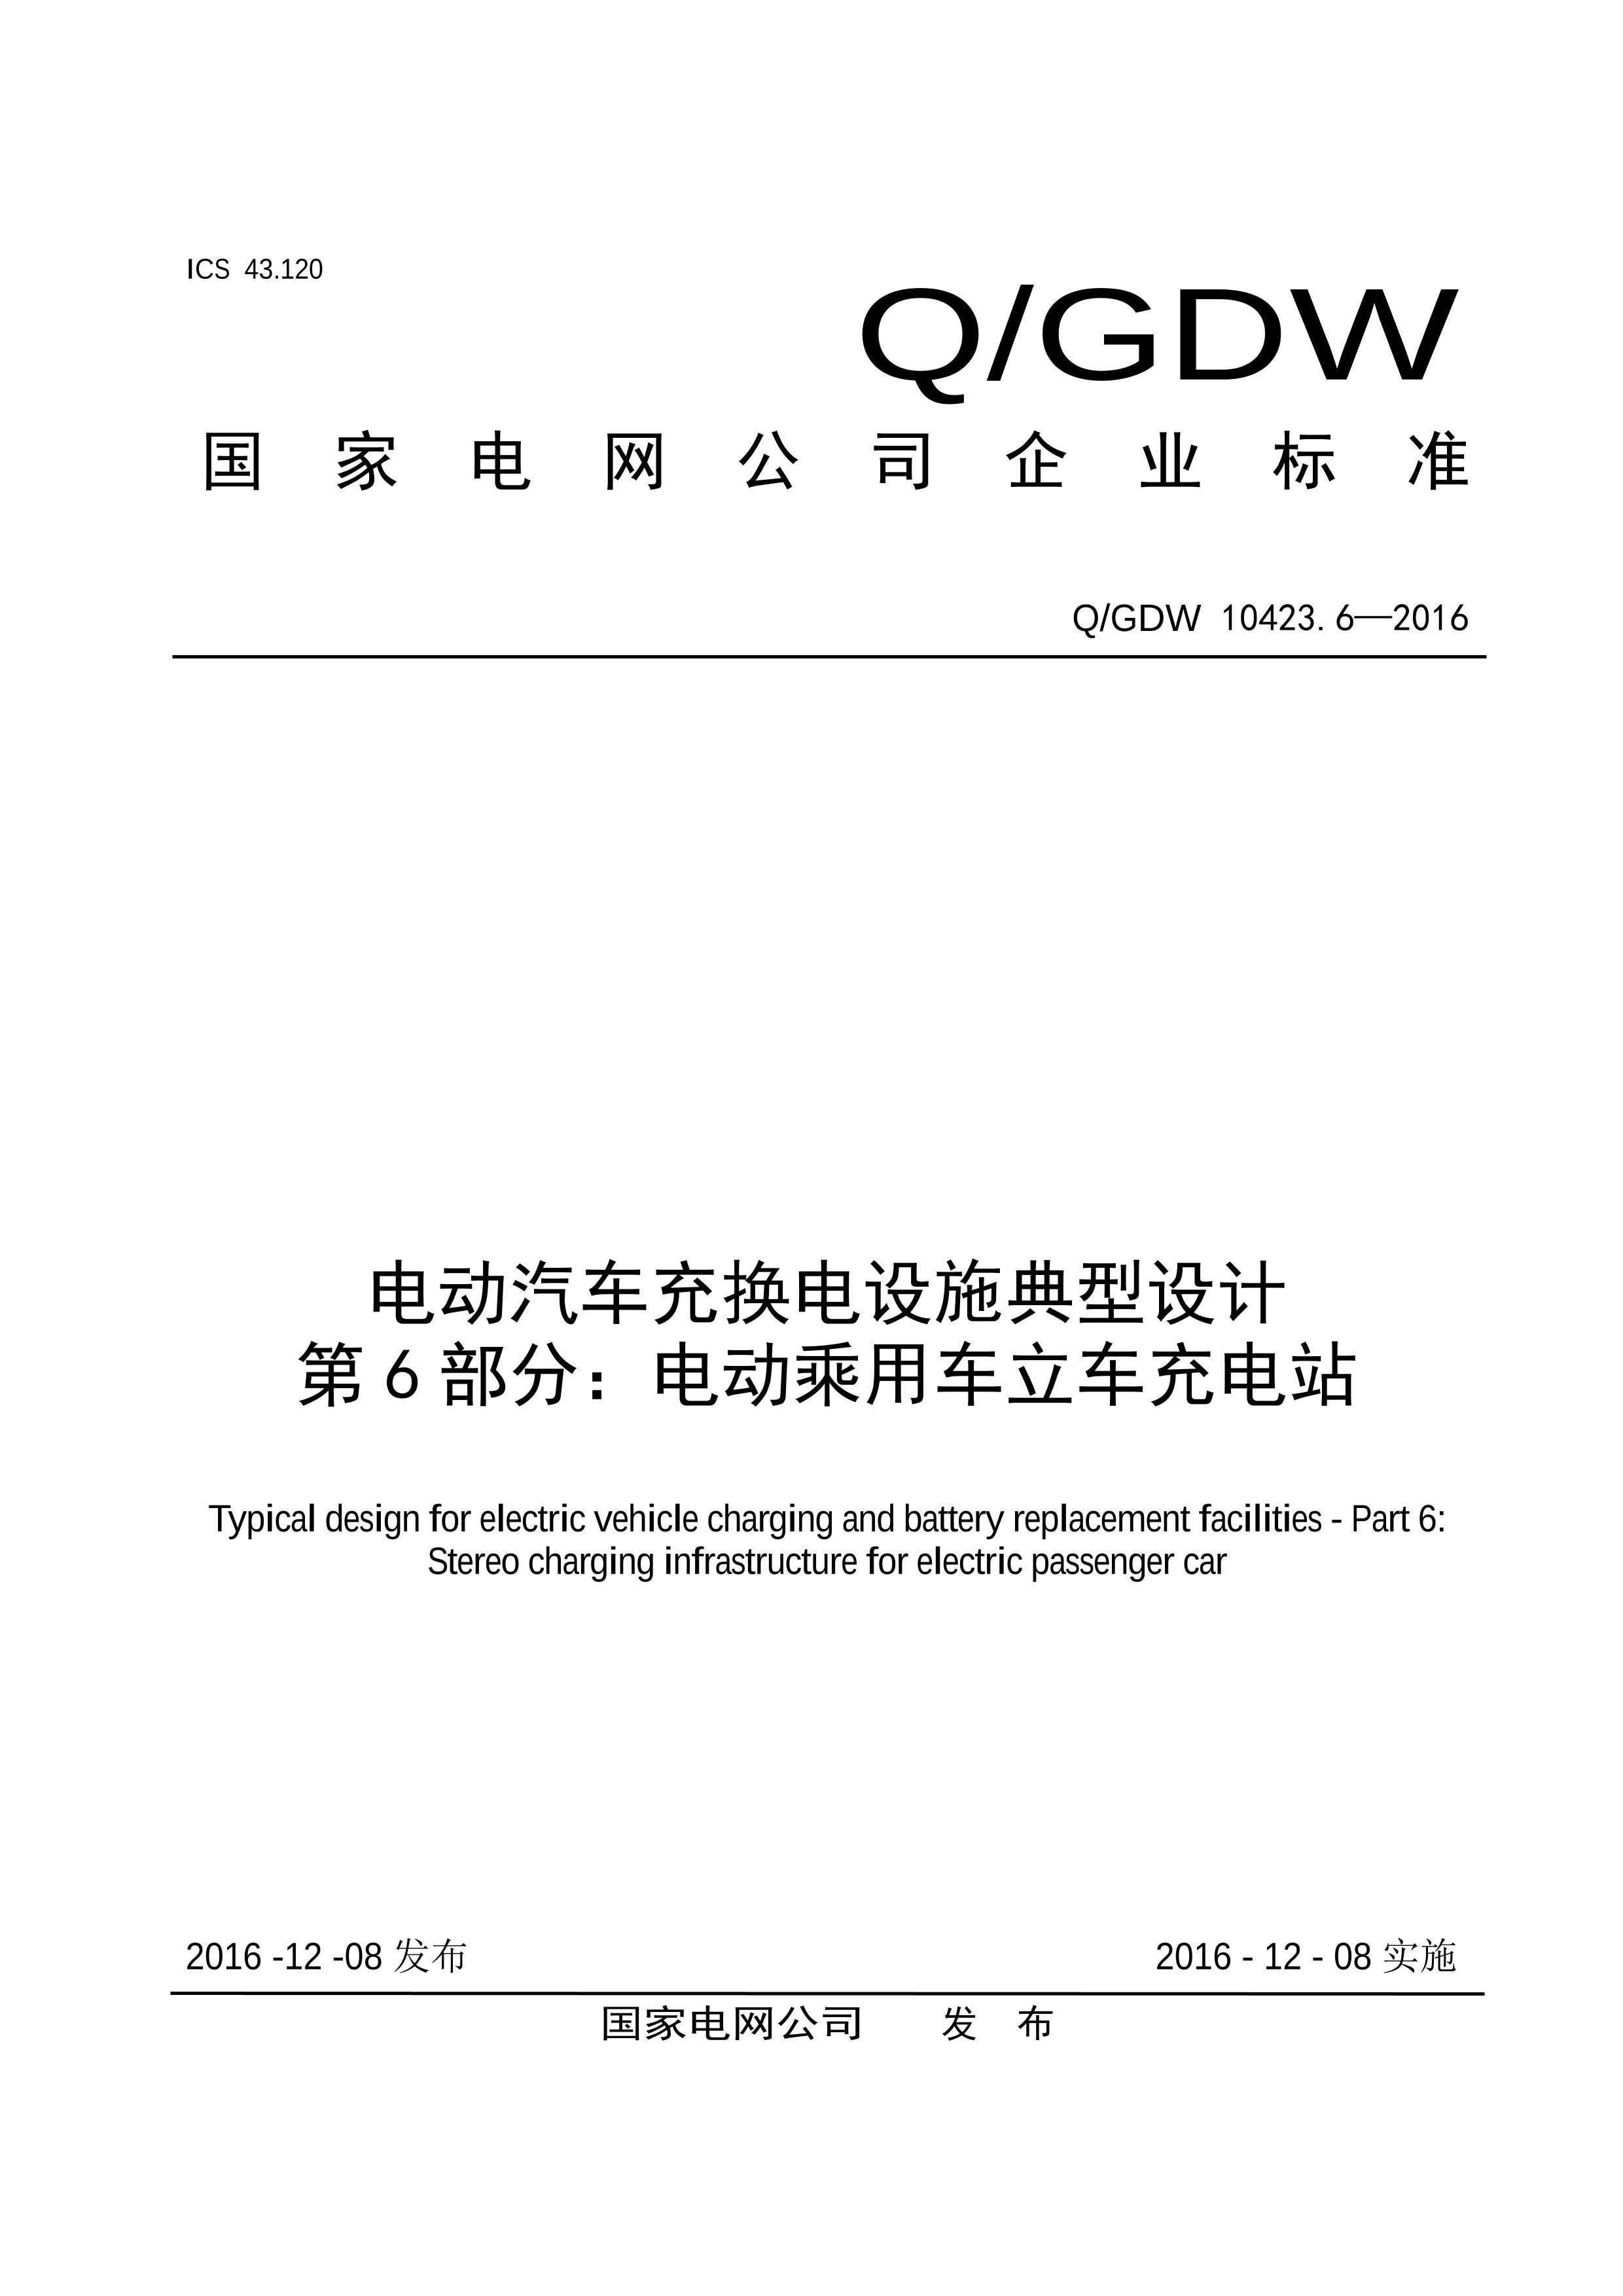 QGDW 10423.6-2016 綯任ʩ 6֣綯óվ.pdf1ҳ